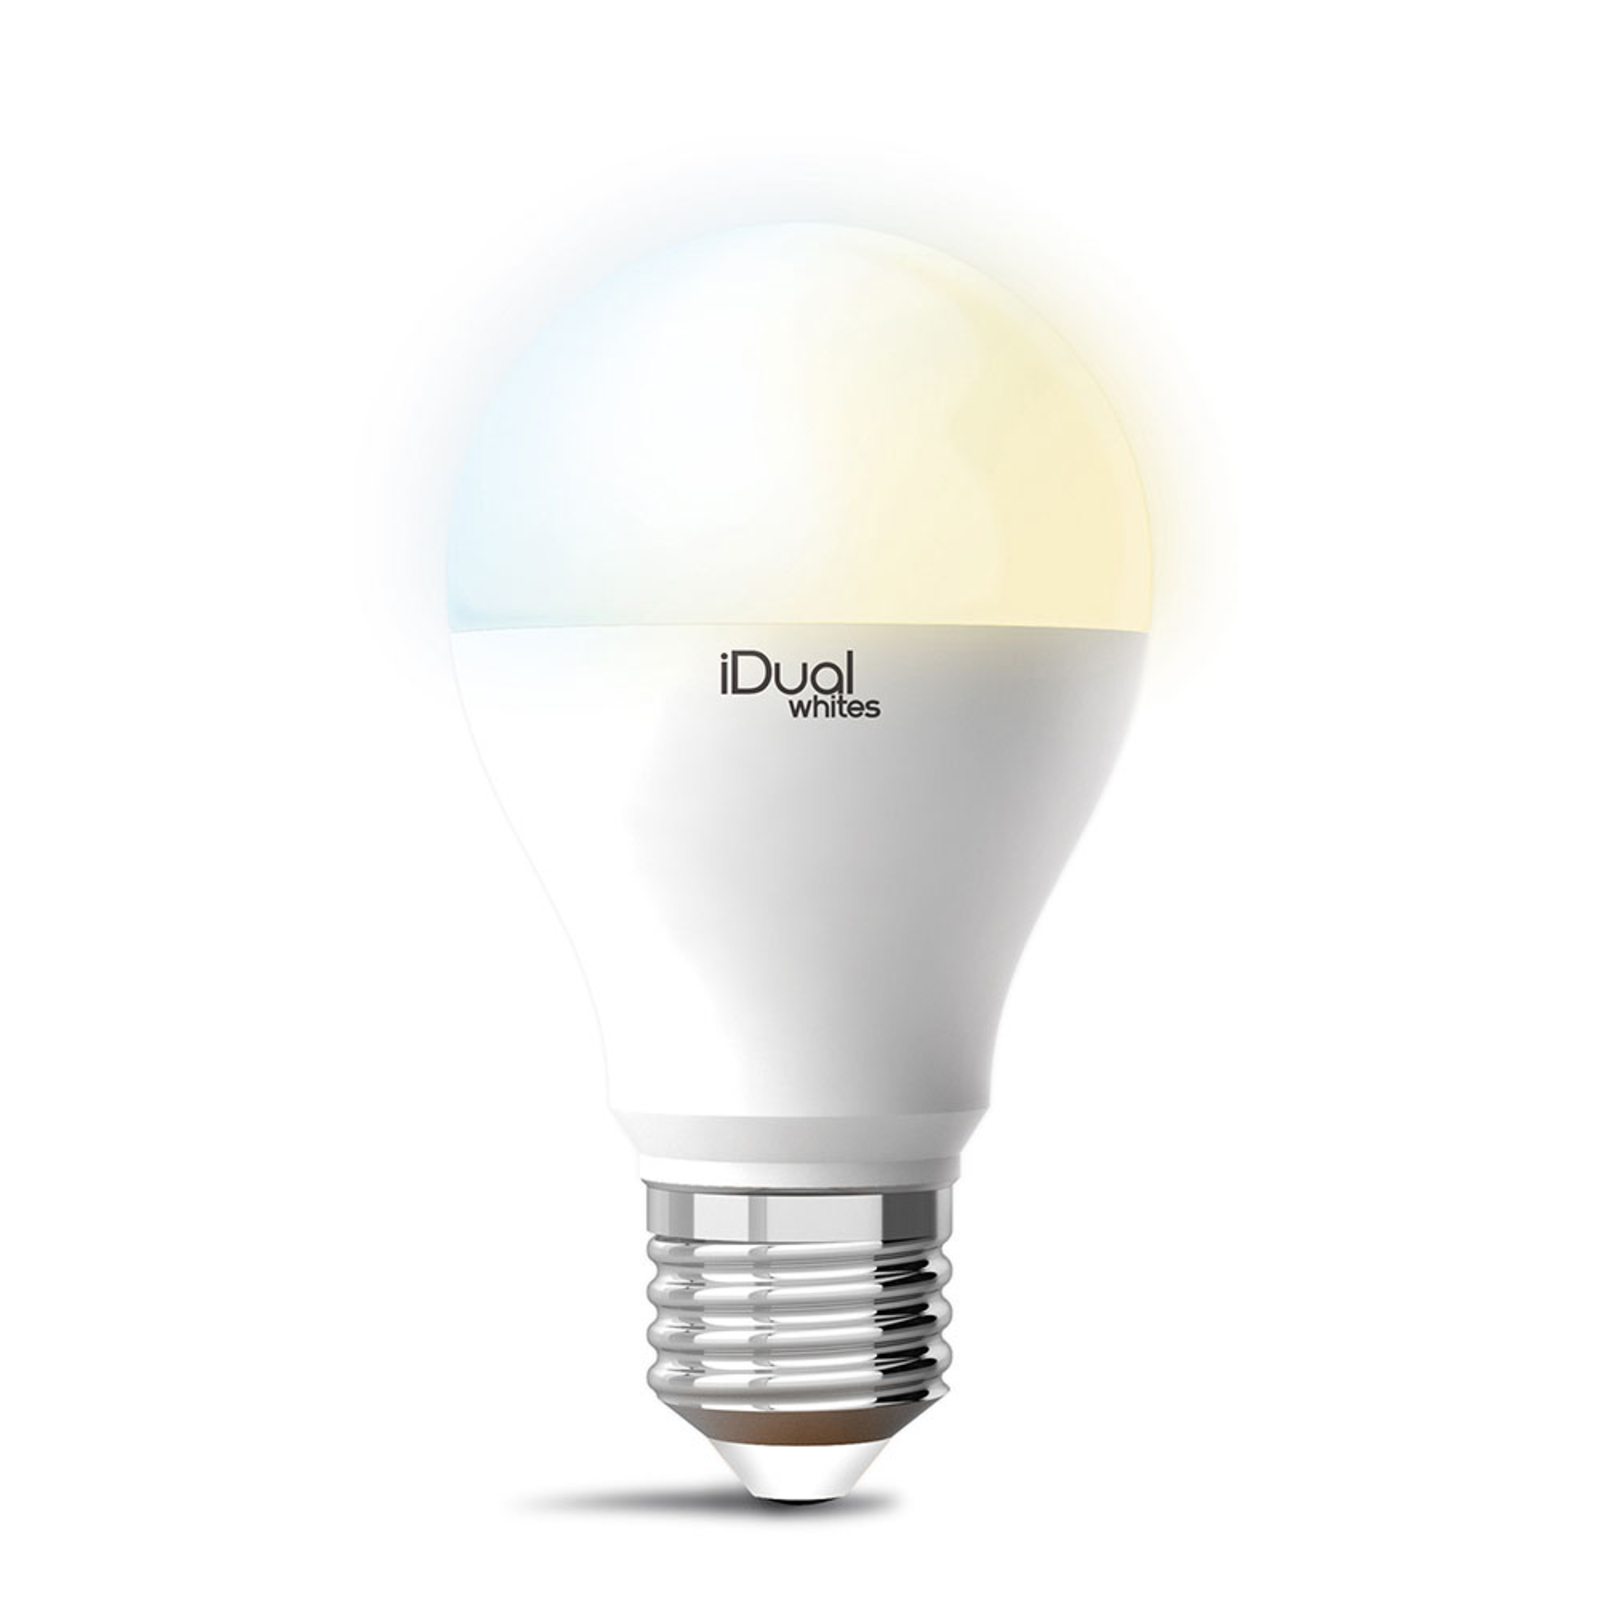 iDual Whites LED E27 A60 10W tunable white